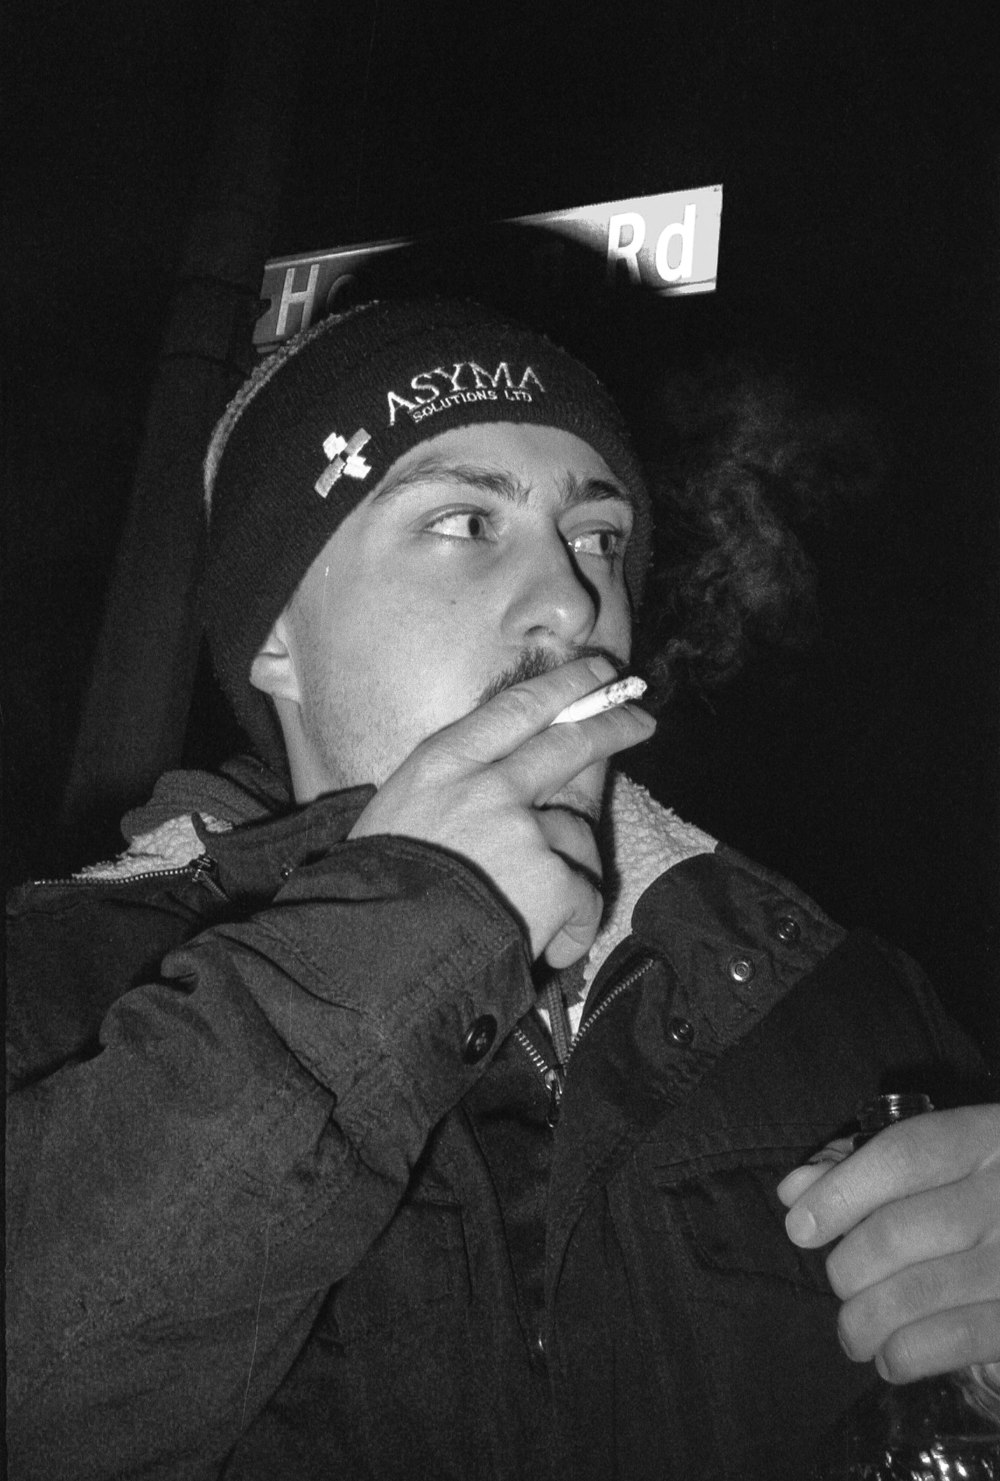 Mann mit schwarzer Mütze raucht Zigarette